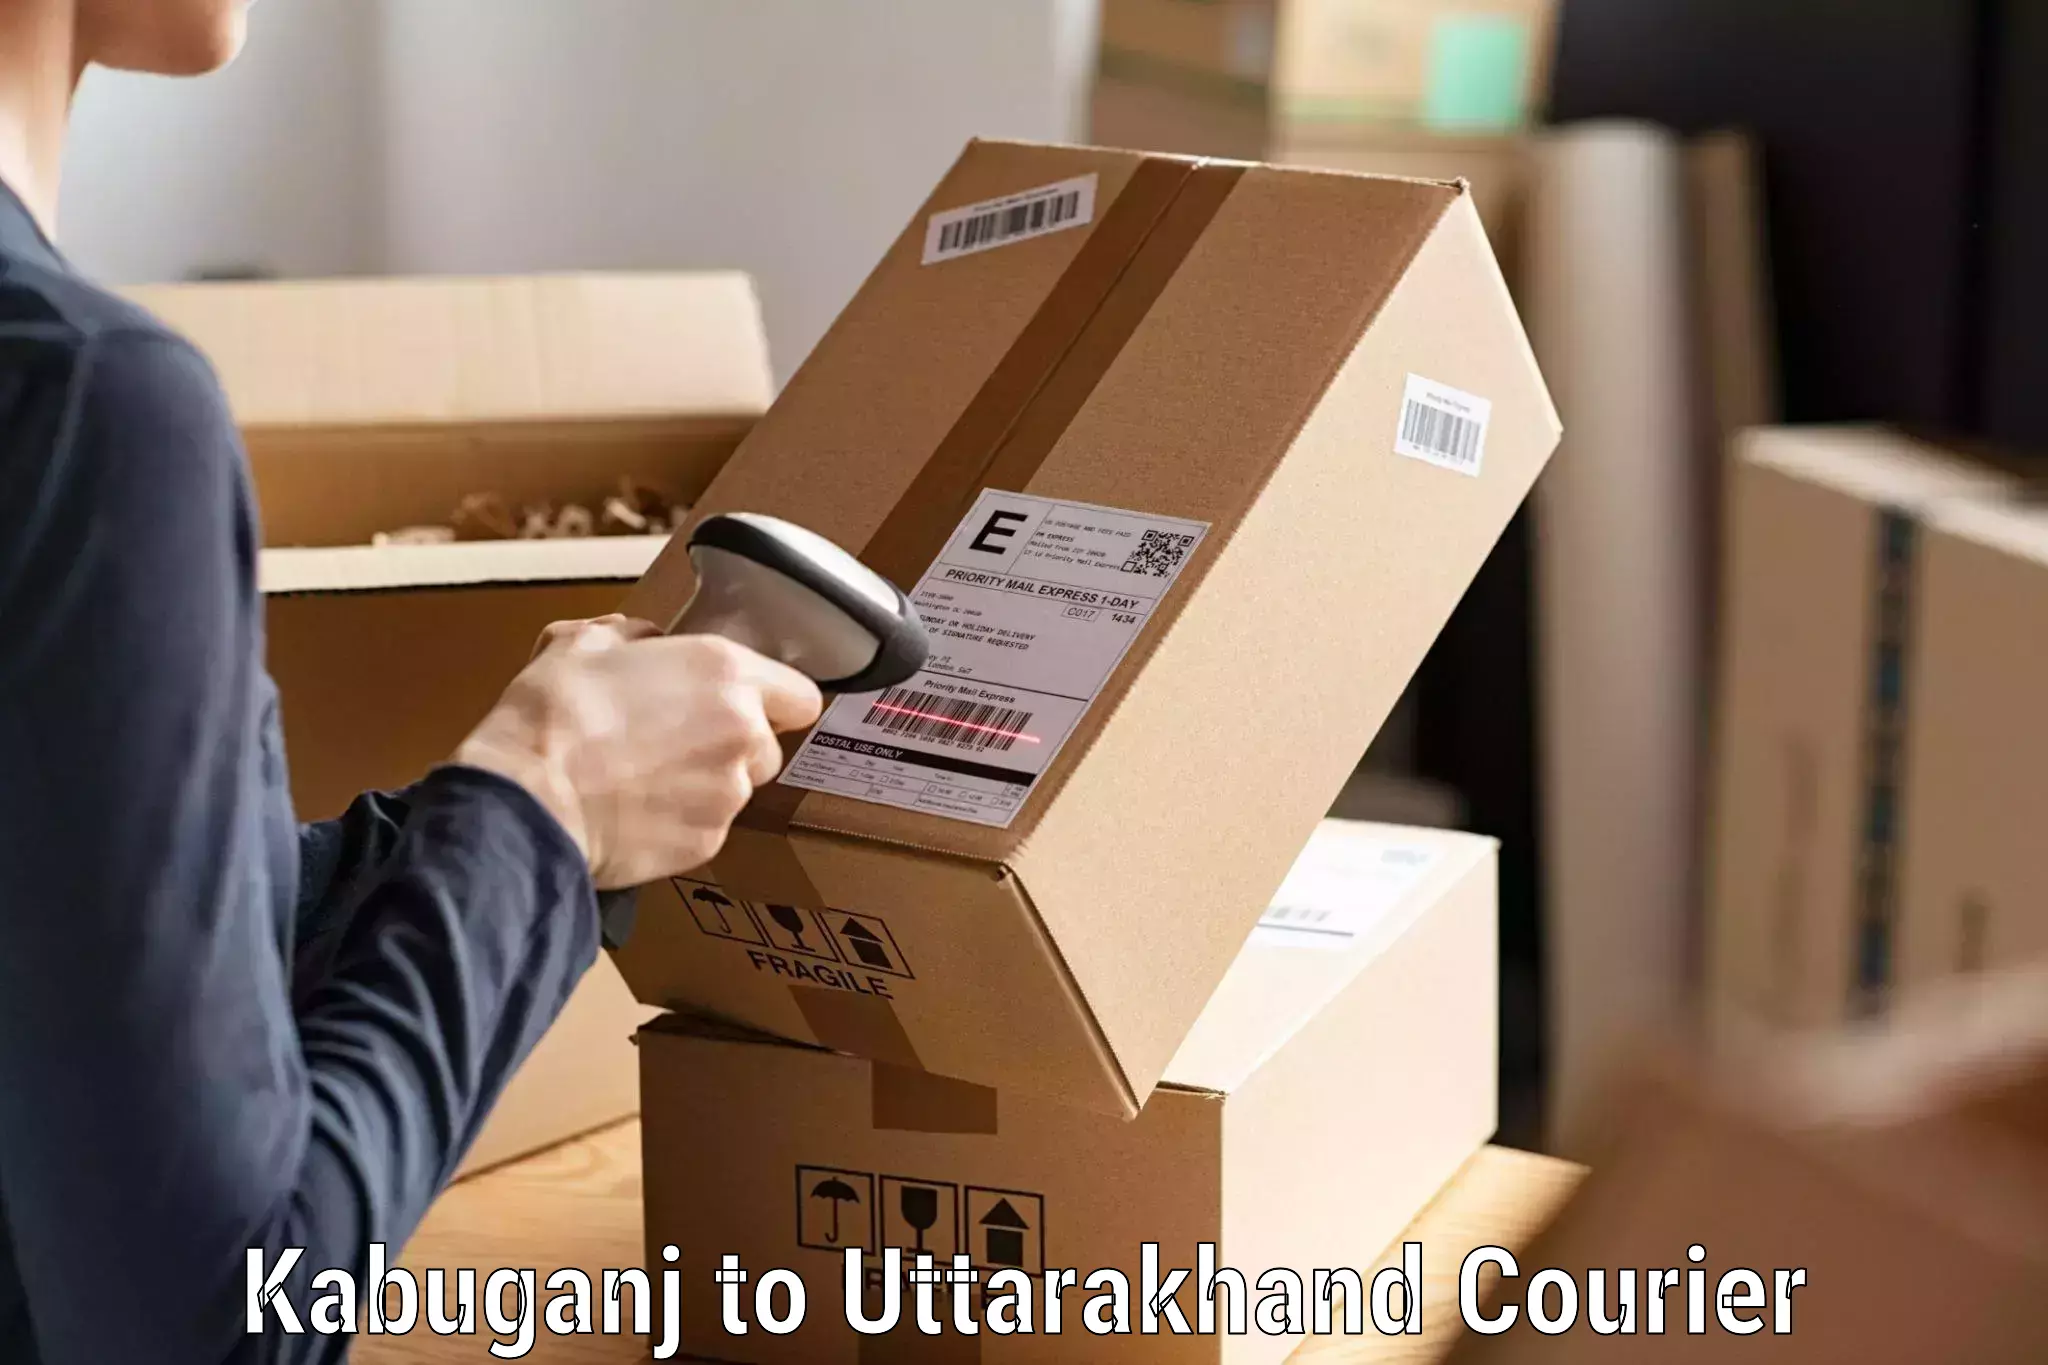 Efficient order fulfillment Kabuganj to Nainital